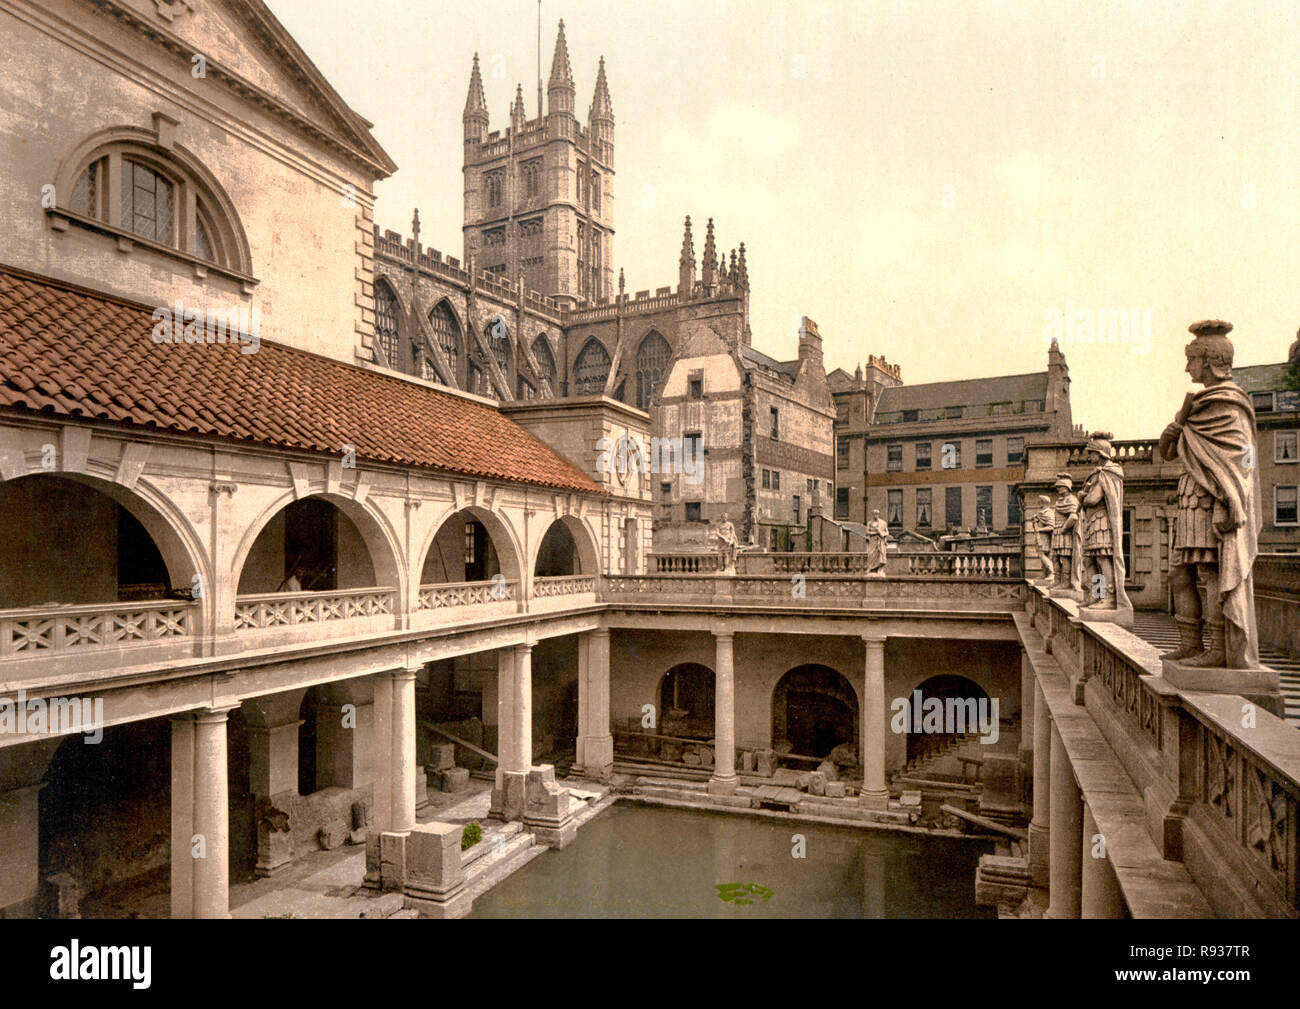 Les bains romains et l'abbaye, Bath, Angleterre, vers 1900 Banque D'Images